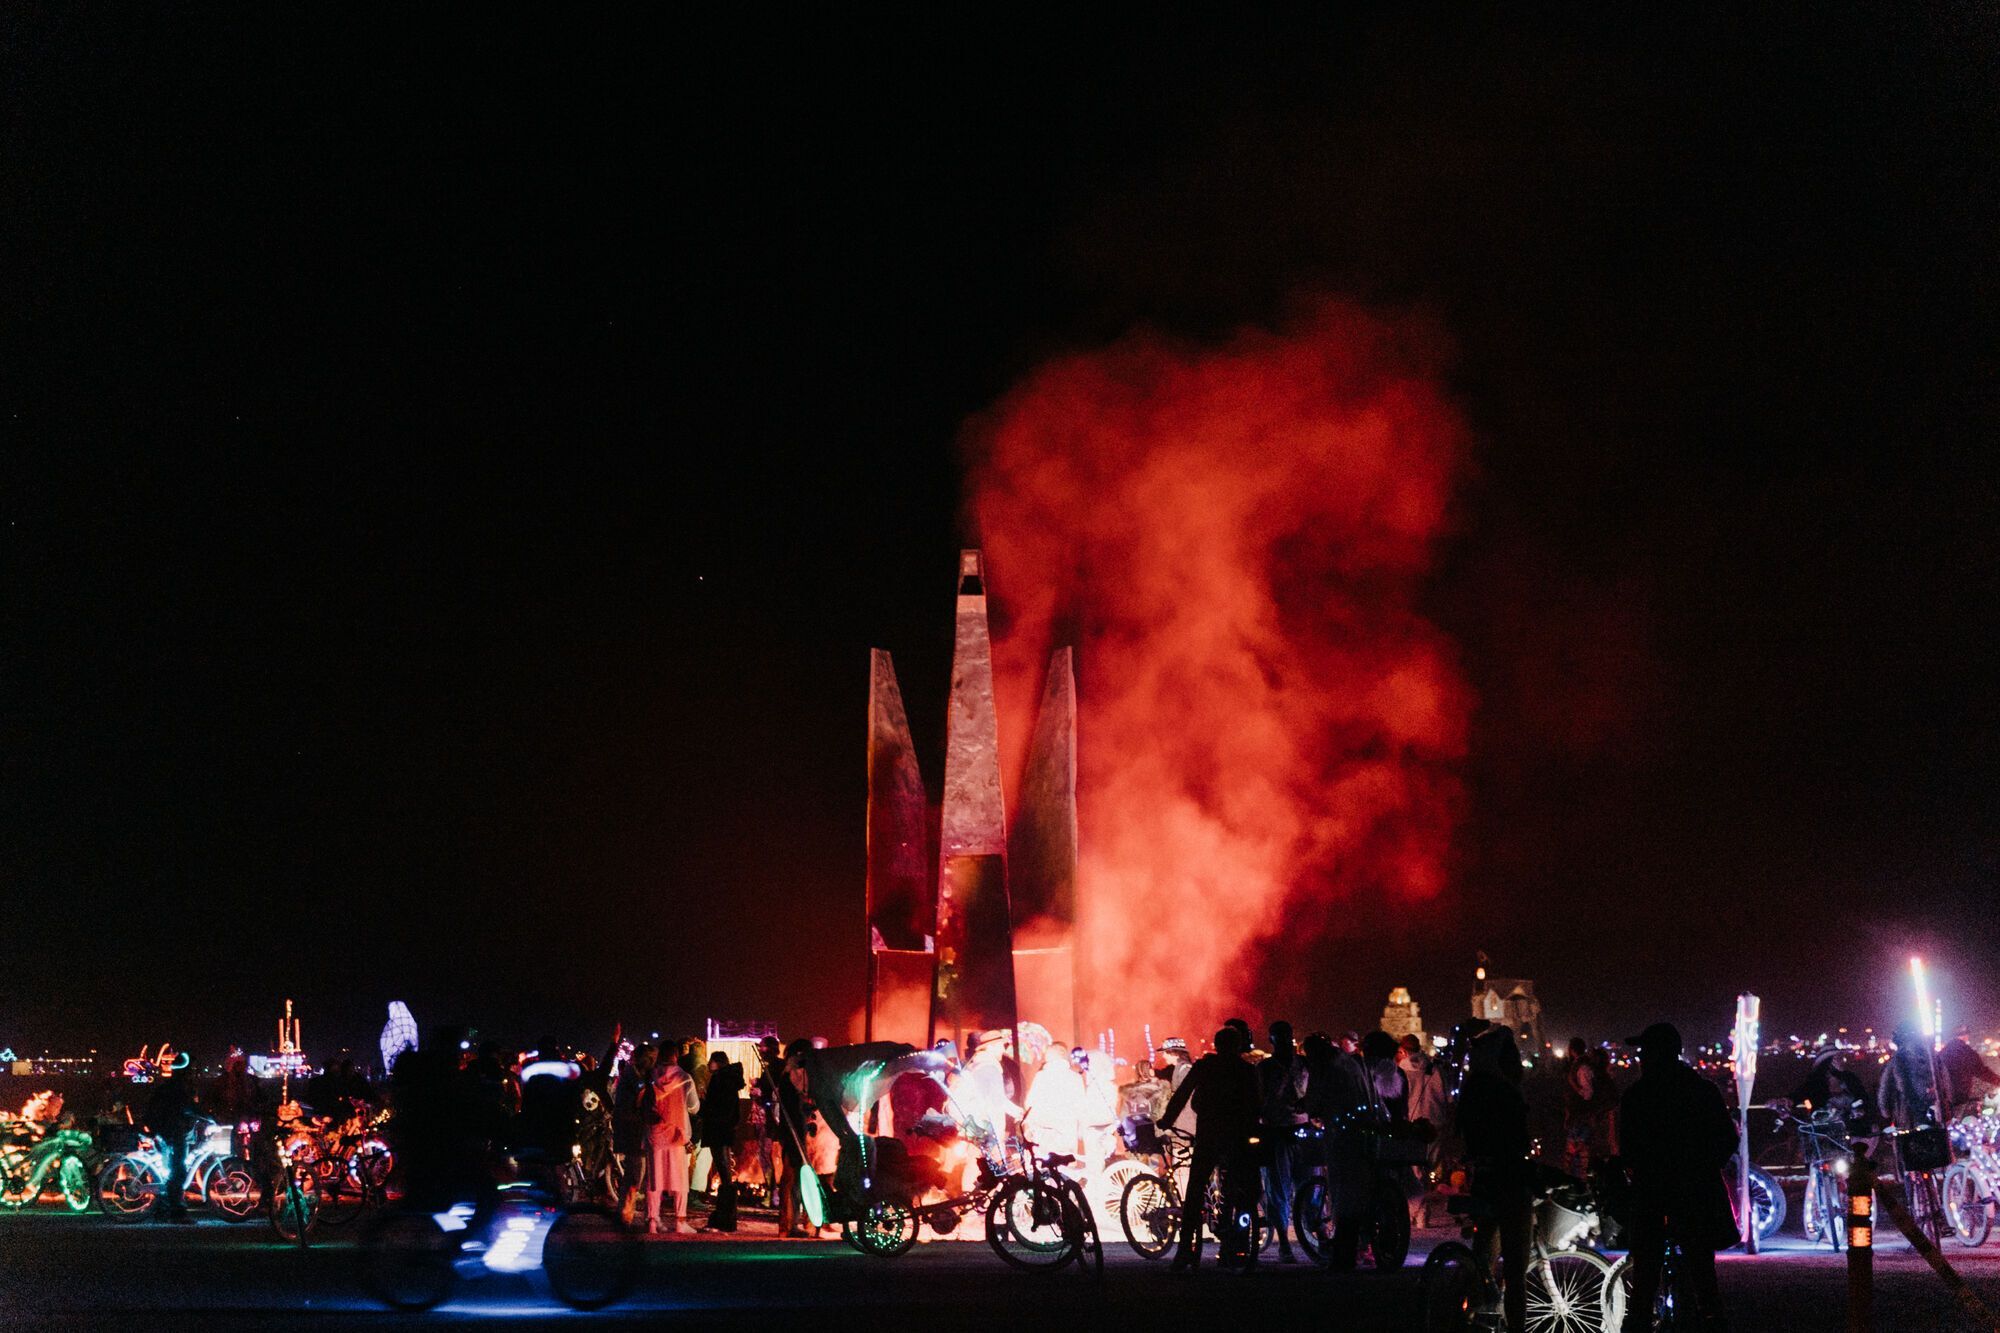 На всесвітньовідомому фестивалі Burning Man у США спалили інсталяцію з України: Віталій Дейнега розповів про її символізм. Відео